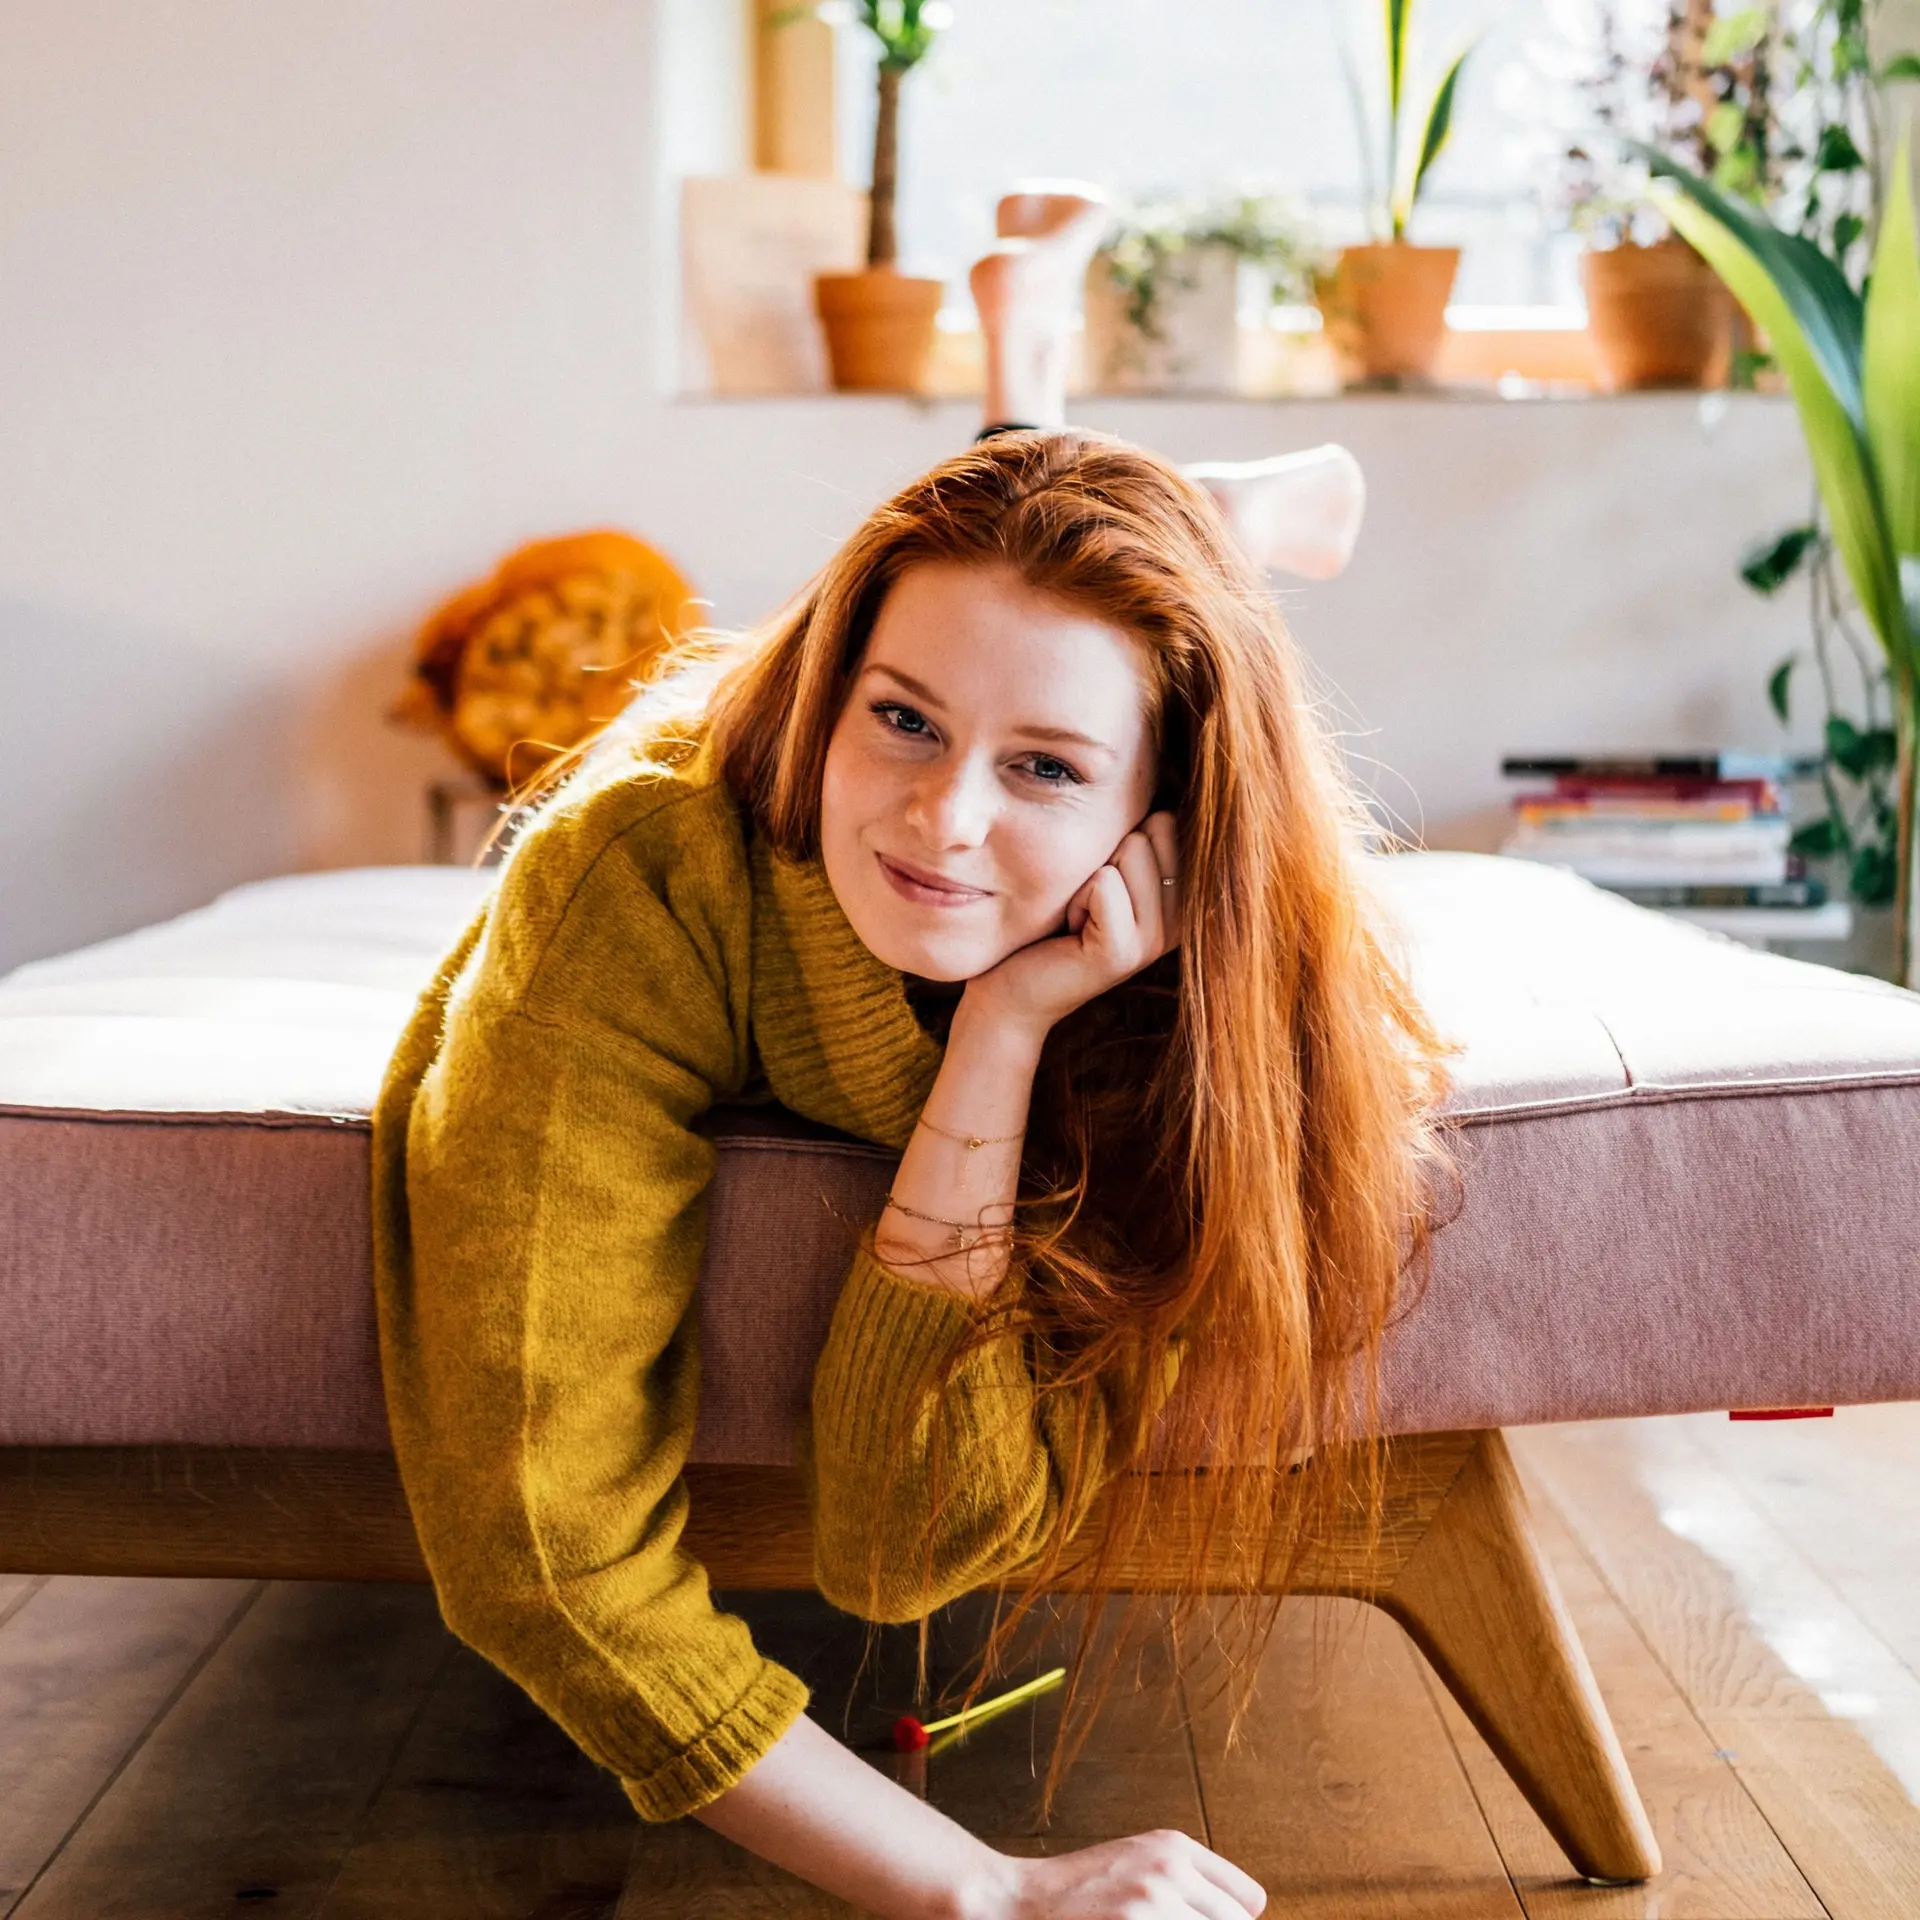 Portrait einer jungen Frau, die lächelnd im Wohnzimmer auf einem ausgezogenen Sofa liegt.